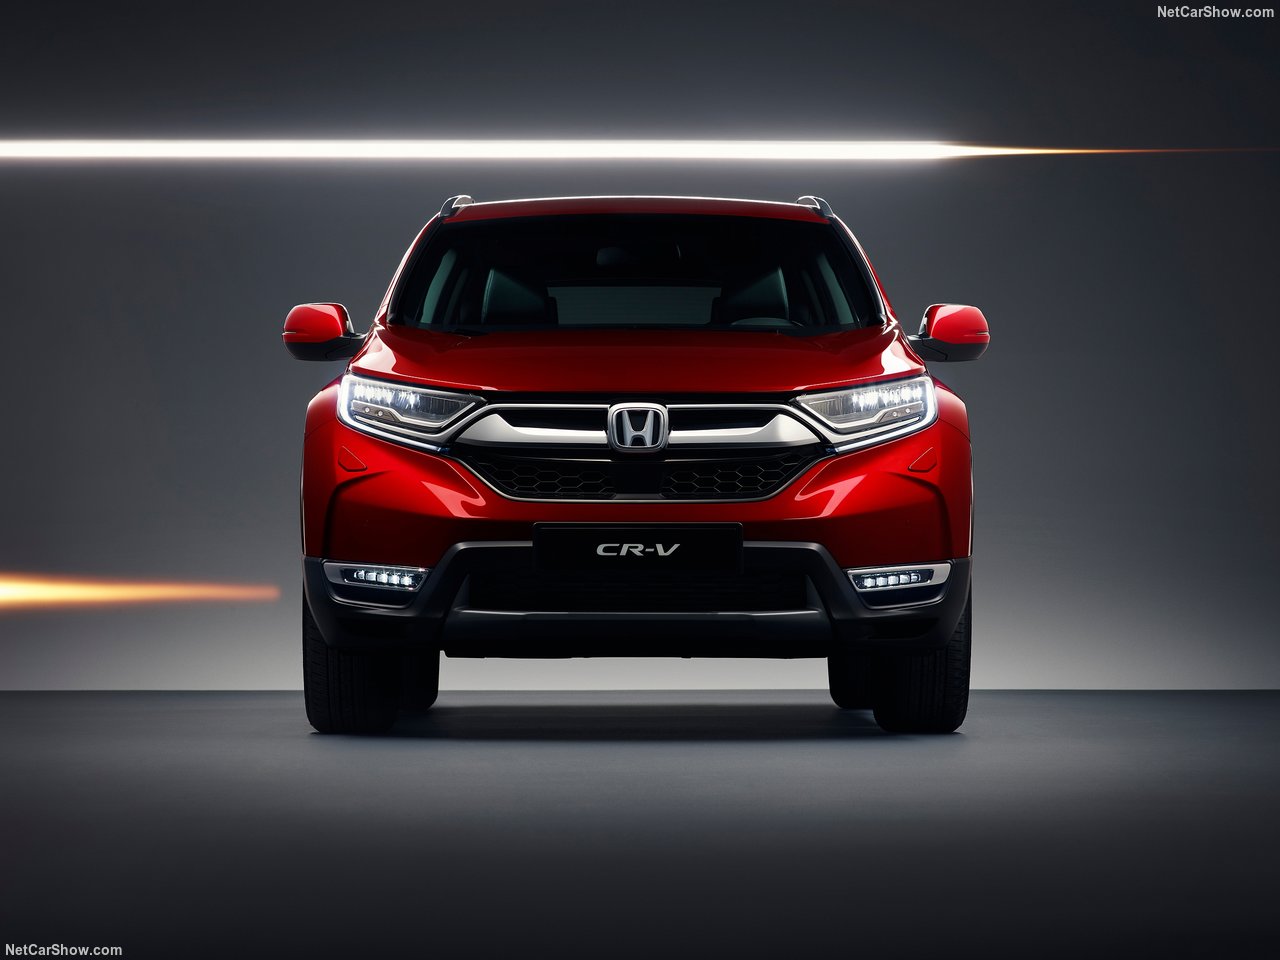 2019 Yeni Honda CR-V, Türkiye’de satışa sunuldu! Yeni Honda CR-V’nin özellikleri neler?